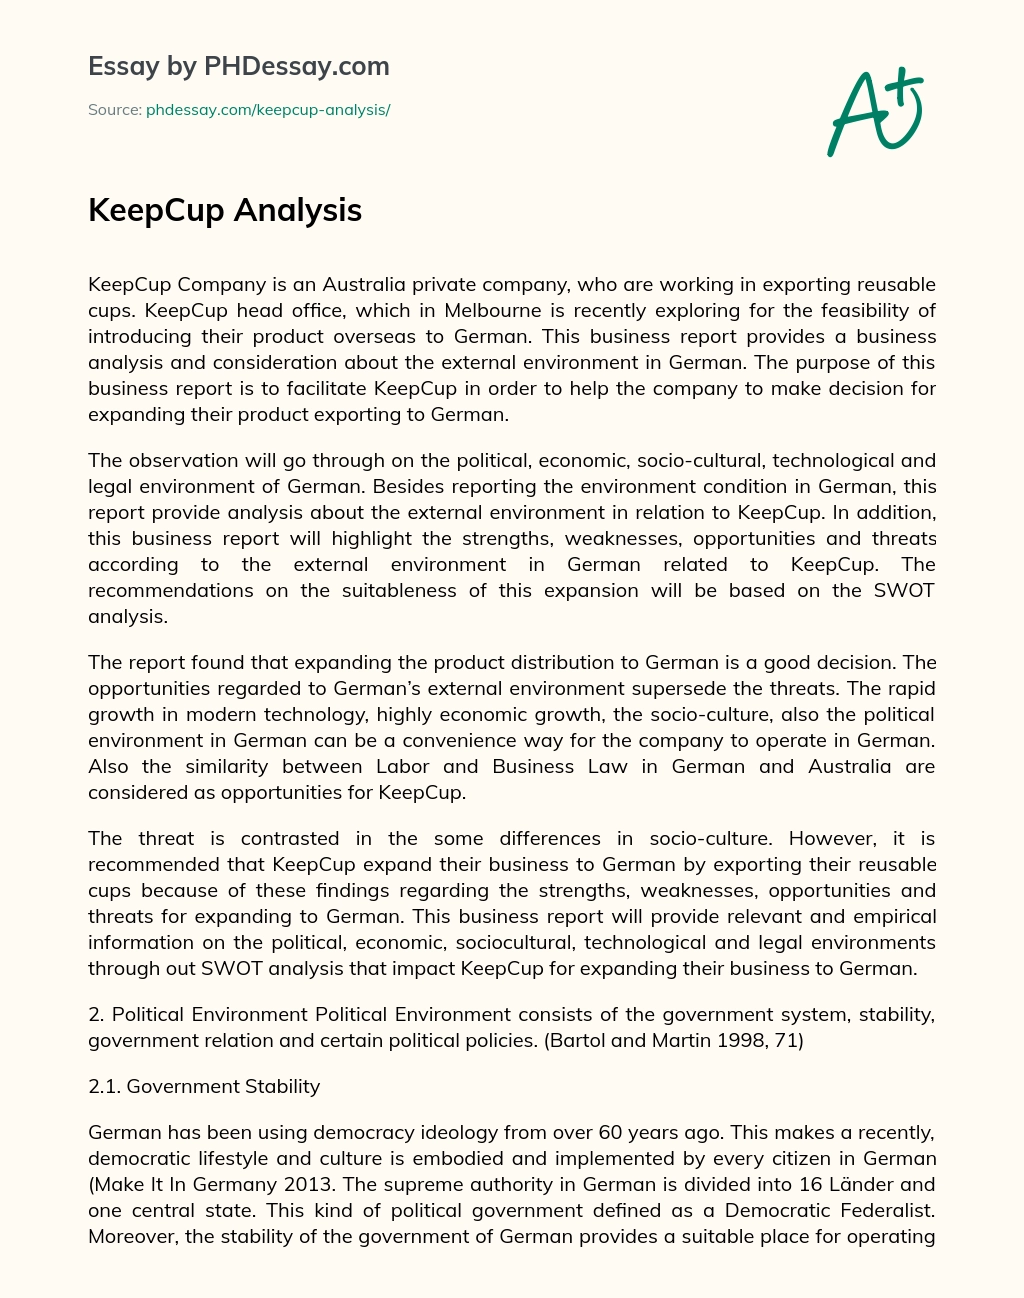 KeepCup Analysis essay